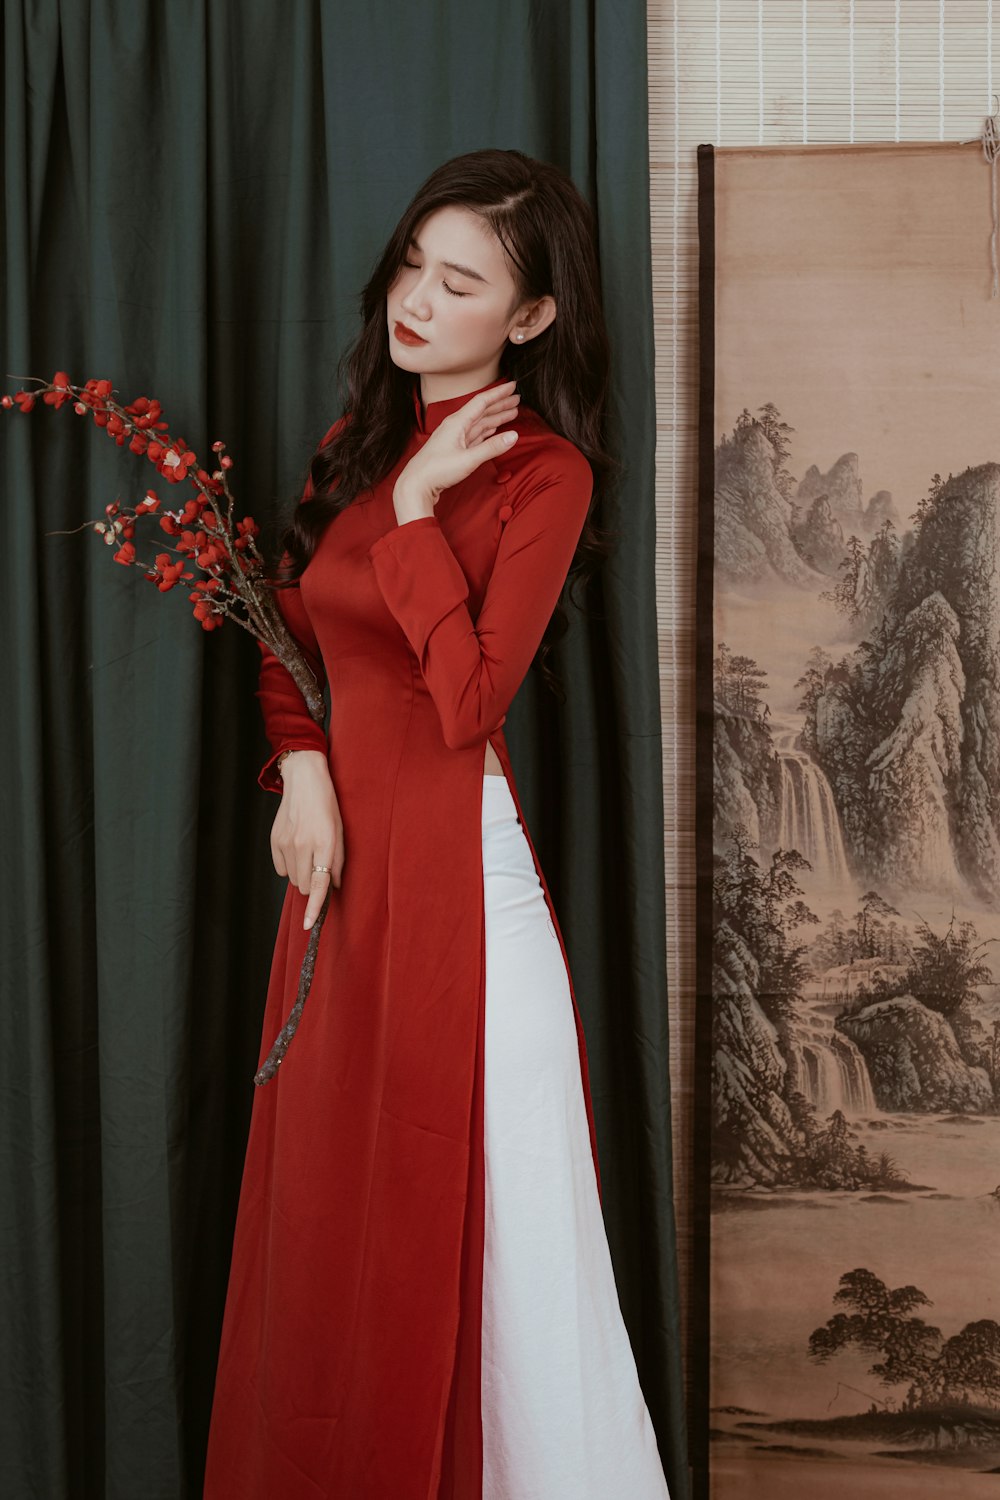 Una mujer con un largo abrigo rojo y vestido blanco